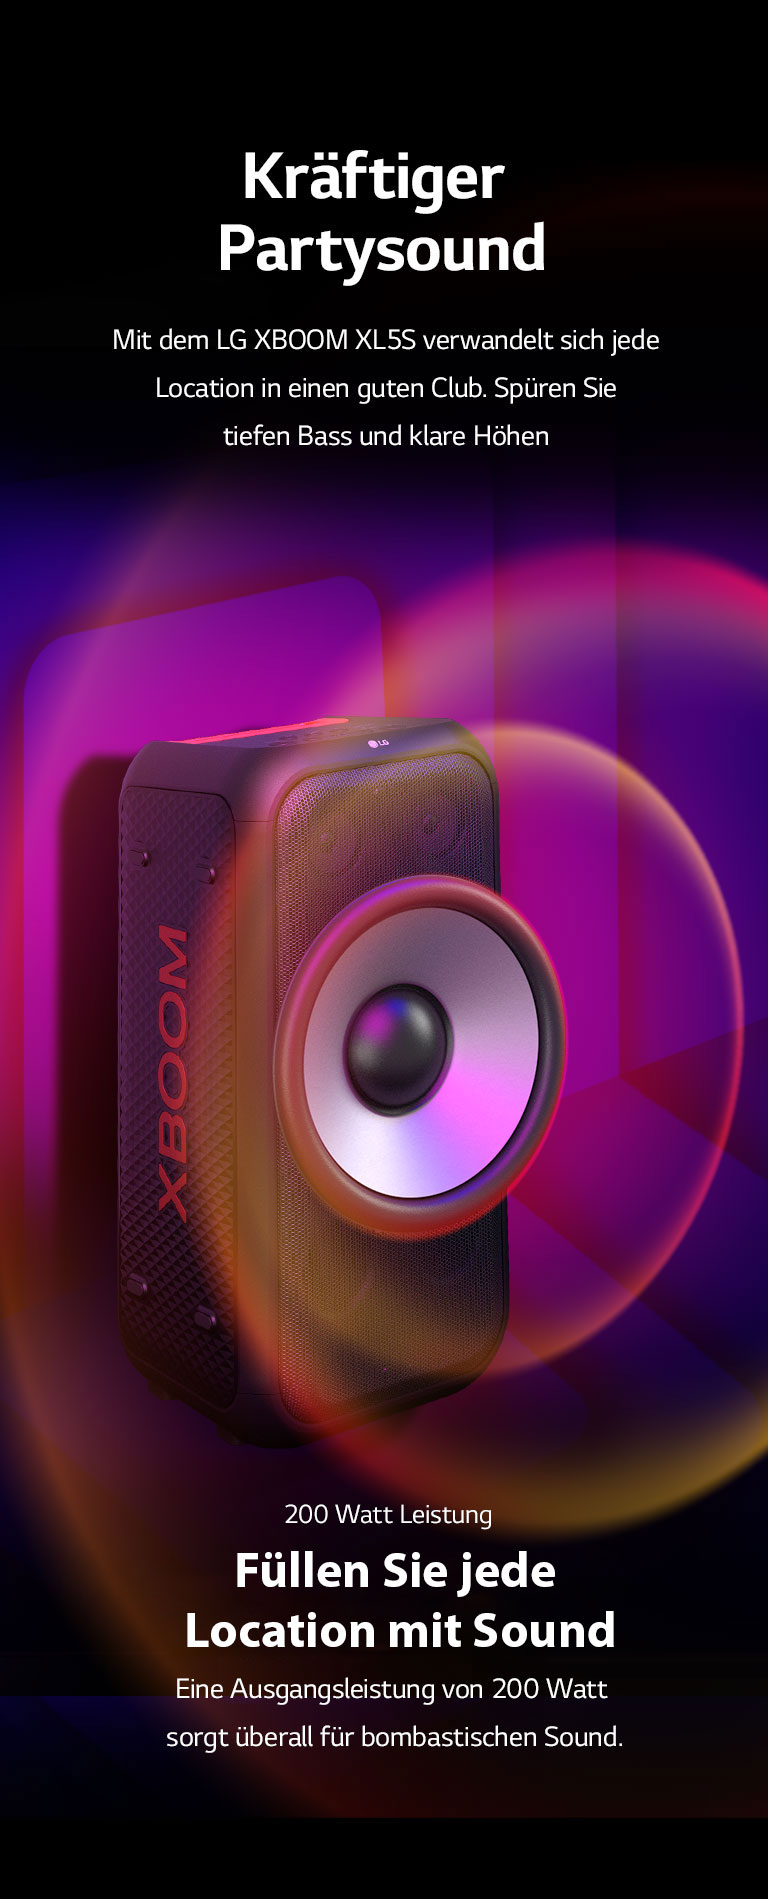 Der LG XBOOM XL5S wird im unendlichen Raum aufgestellt. An der Wand sind quadratische Sound-Grafiken abgebildet. In der Mitte des Lautsprechers ist ein 6,5-Zoll-Riesen-Woofer vergrößert, um seinen 200-W-Sound zu unterstreichen. Vom Woofer gehen Schallwellen aus.